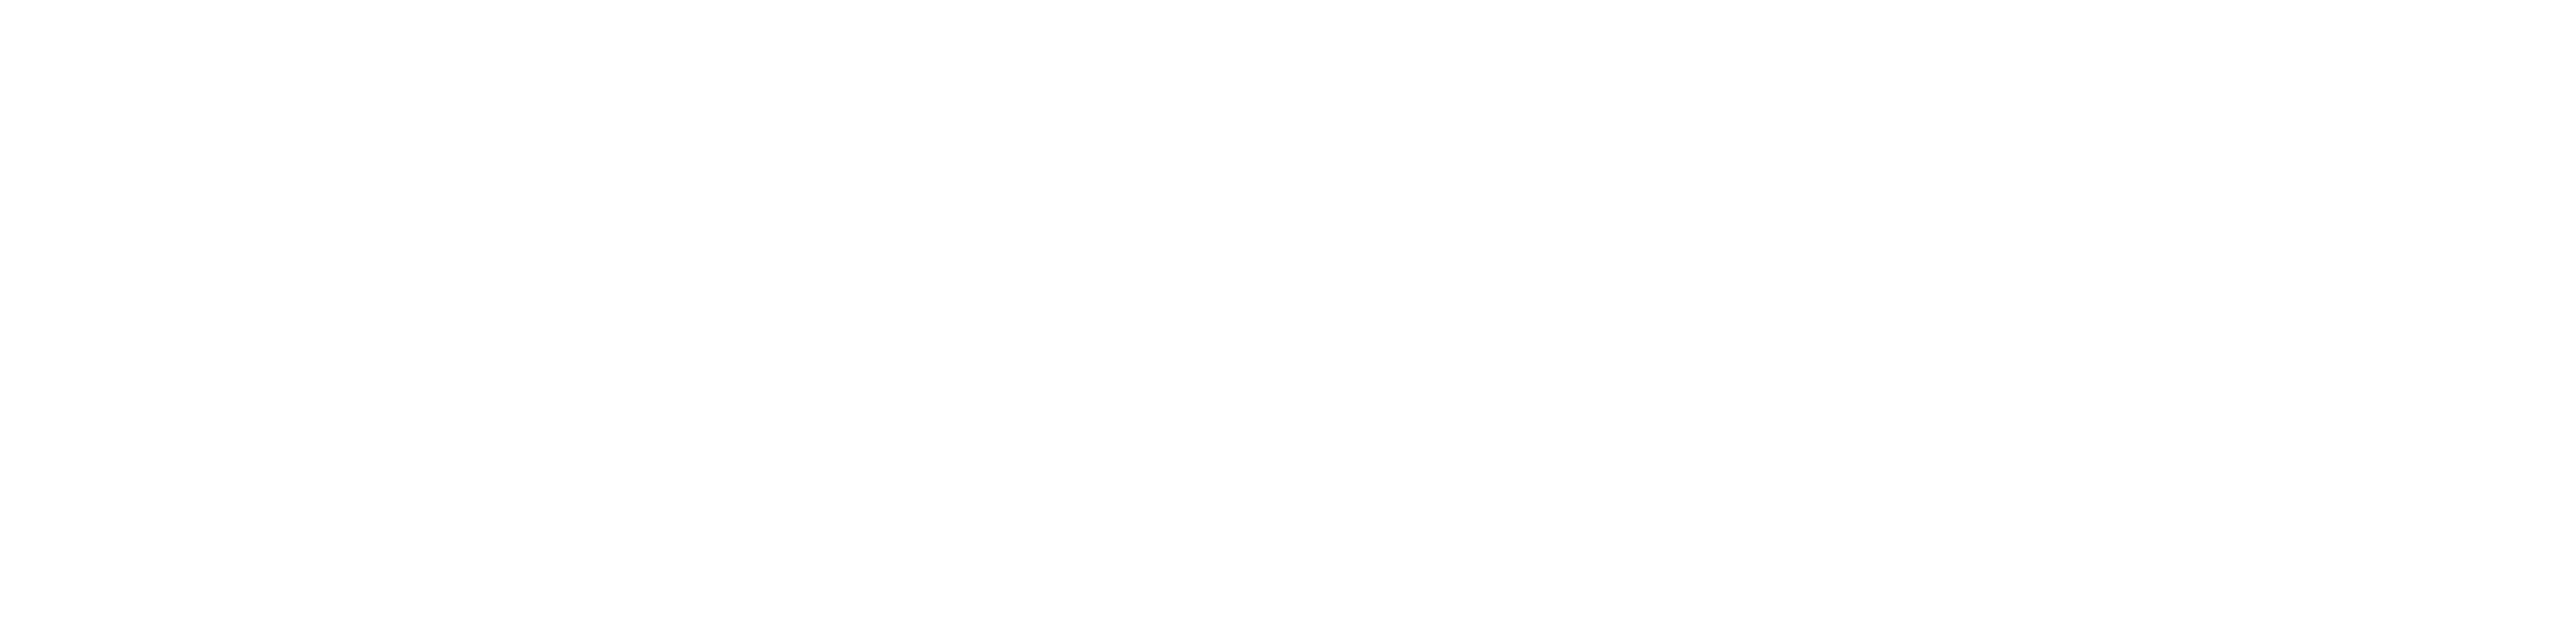 PX logo bianco-01-1